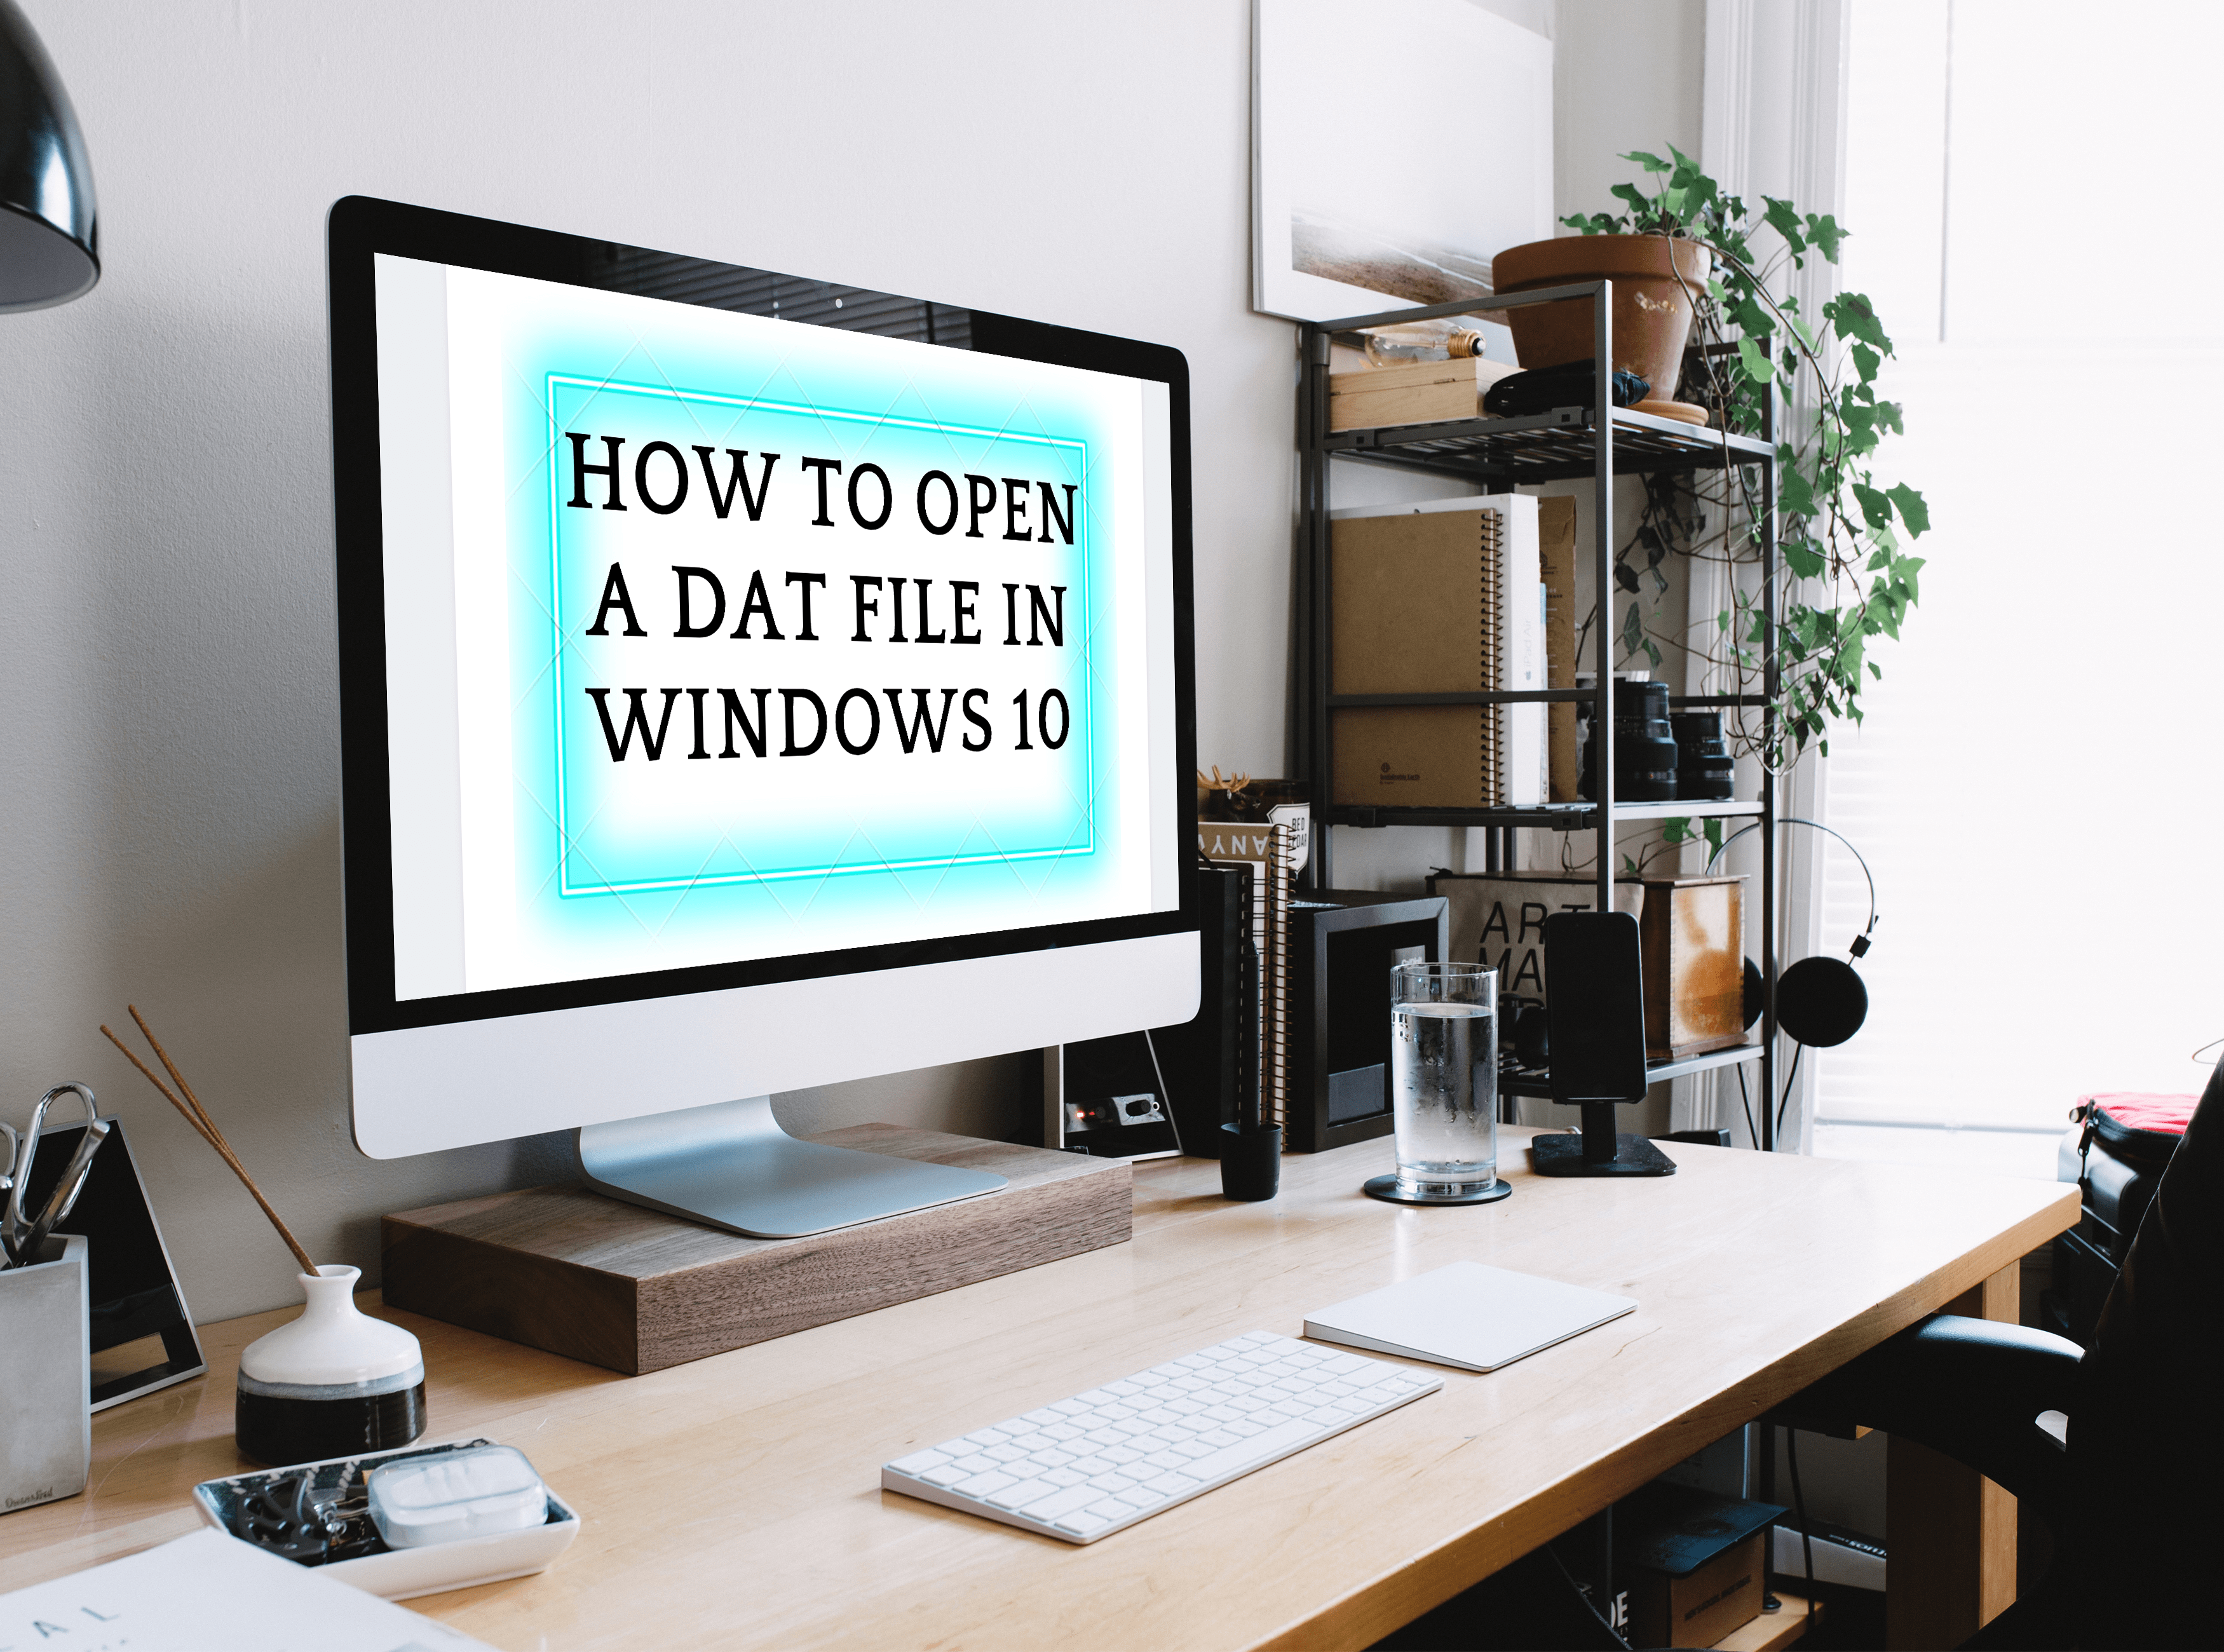 Cara Membuka Fail DAT di Windows 10